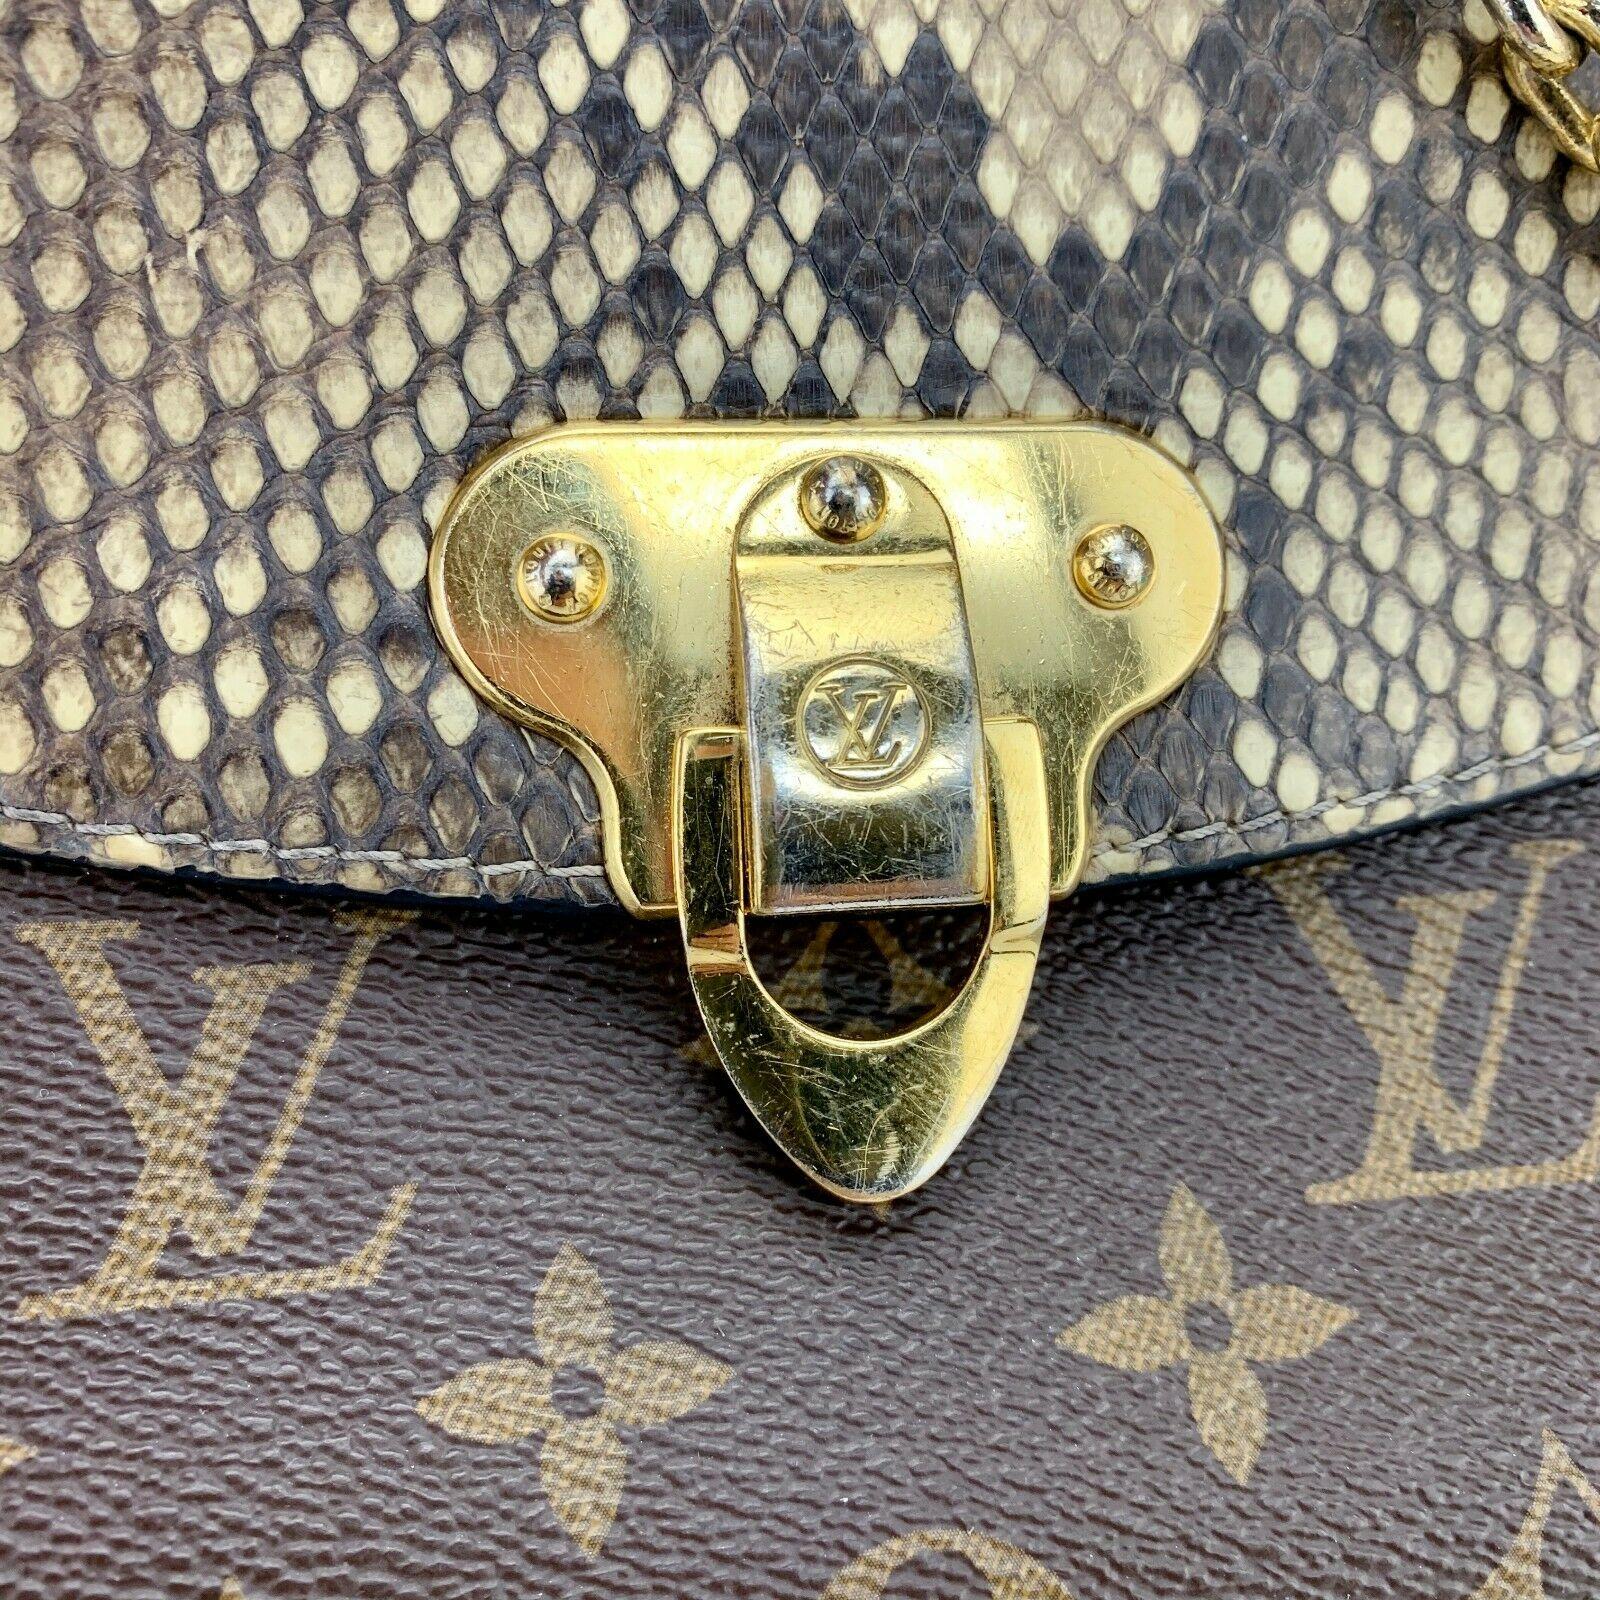 Louis Vuitton St Saint Placide Monogram Python Bag Purse N90234